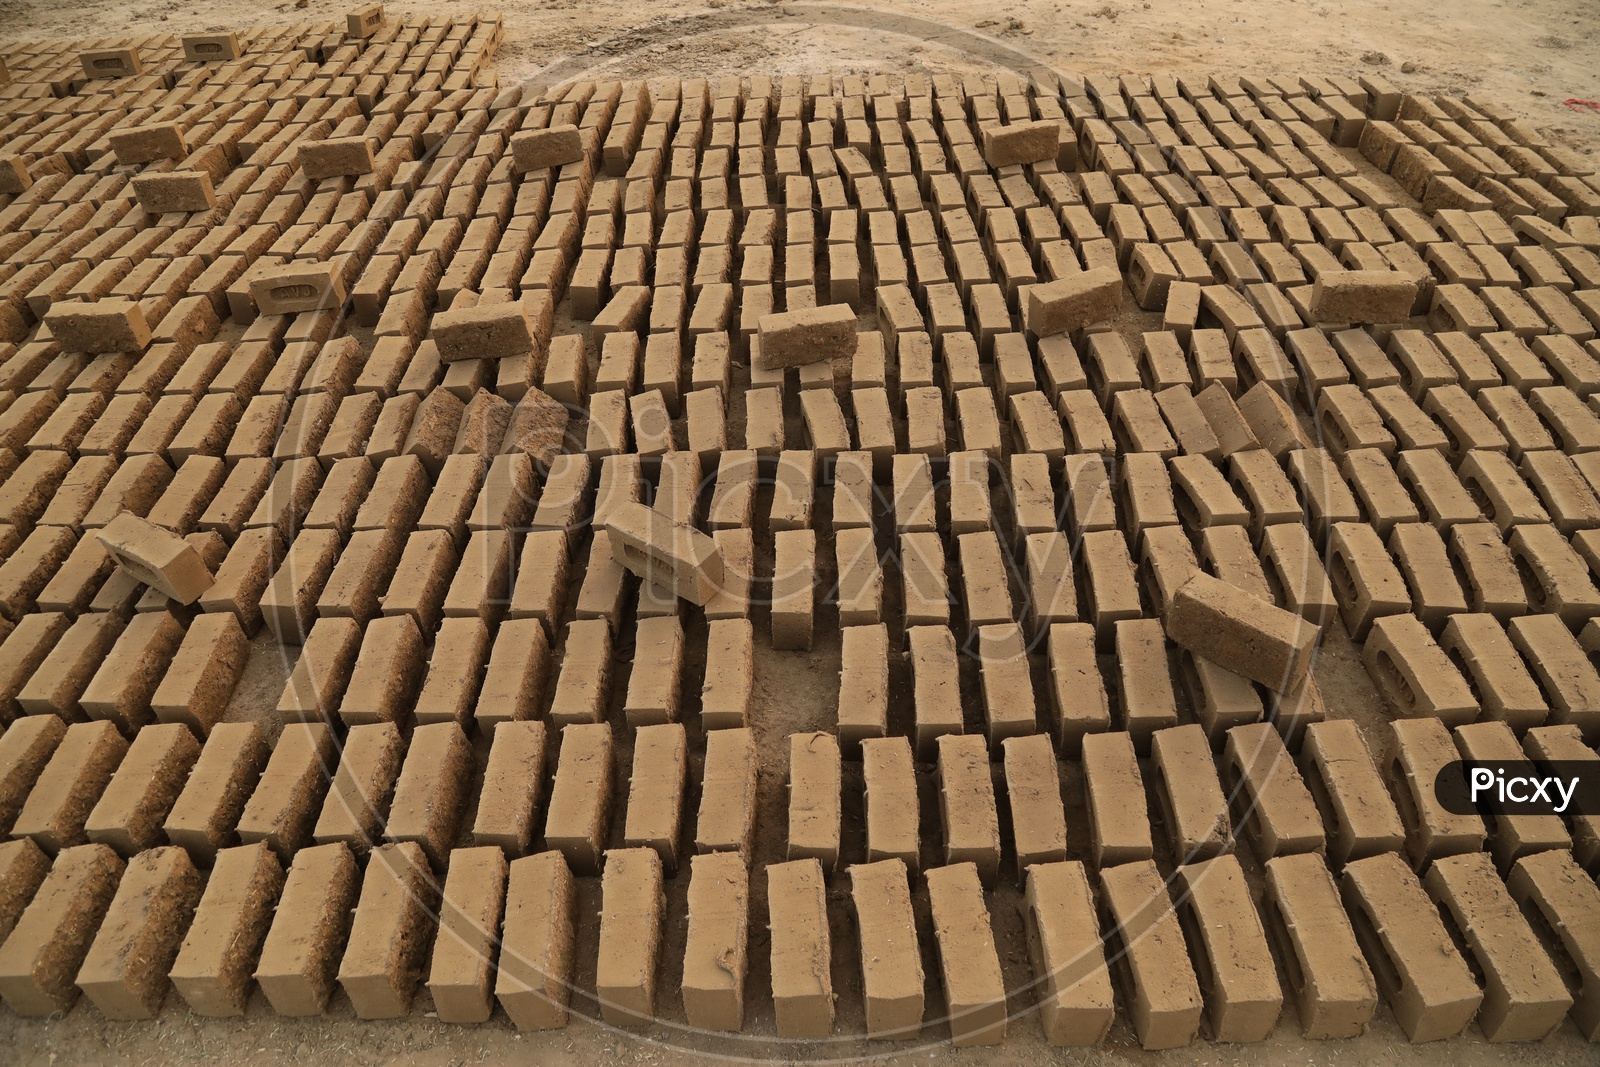 Making of Mud brick